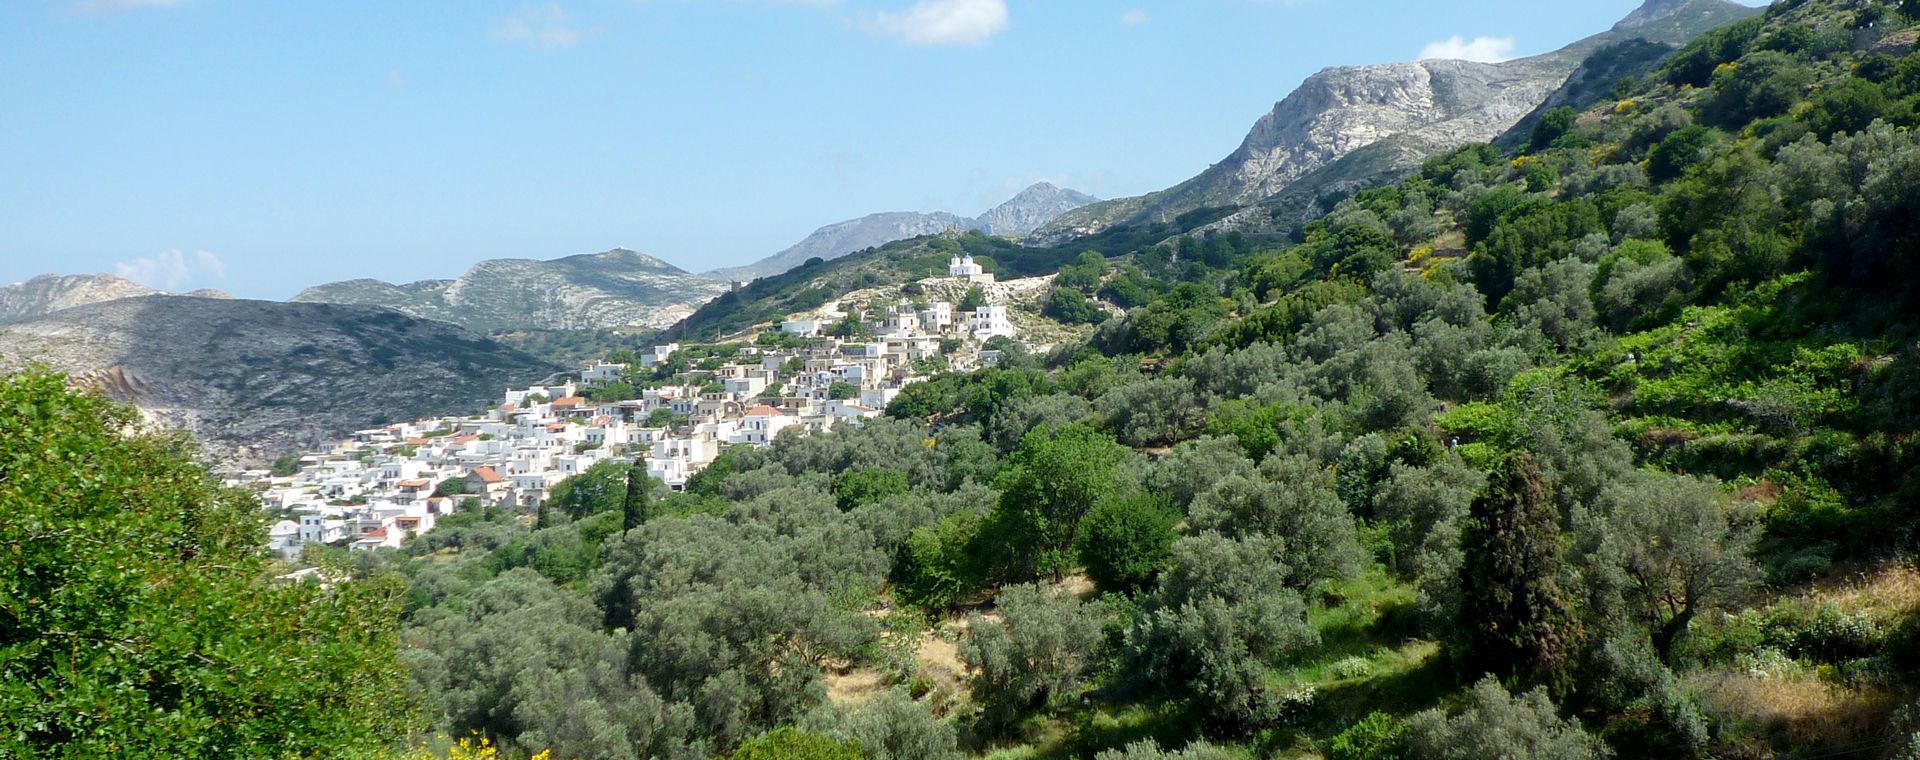 Village de Filoti sur l'île de Naxos